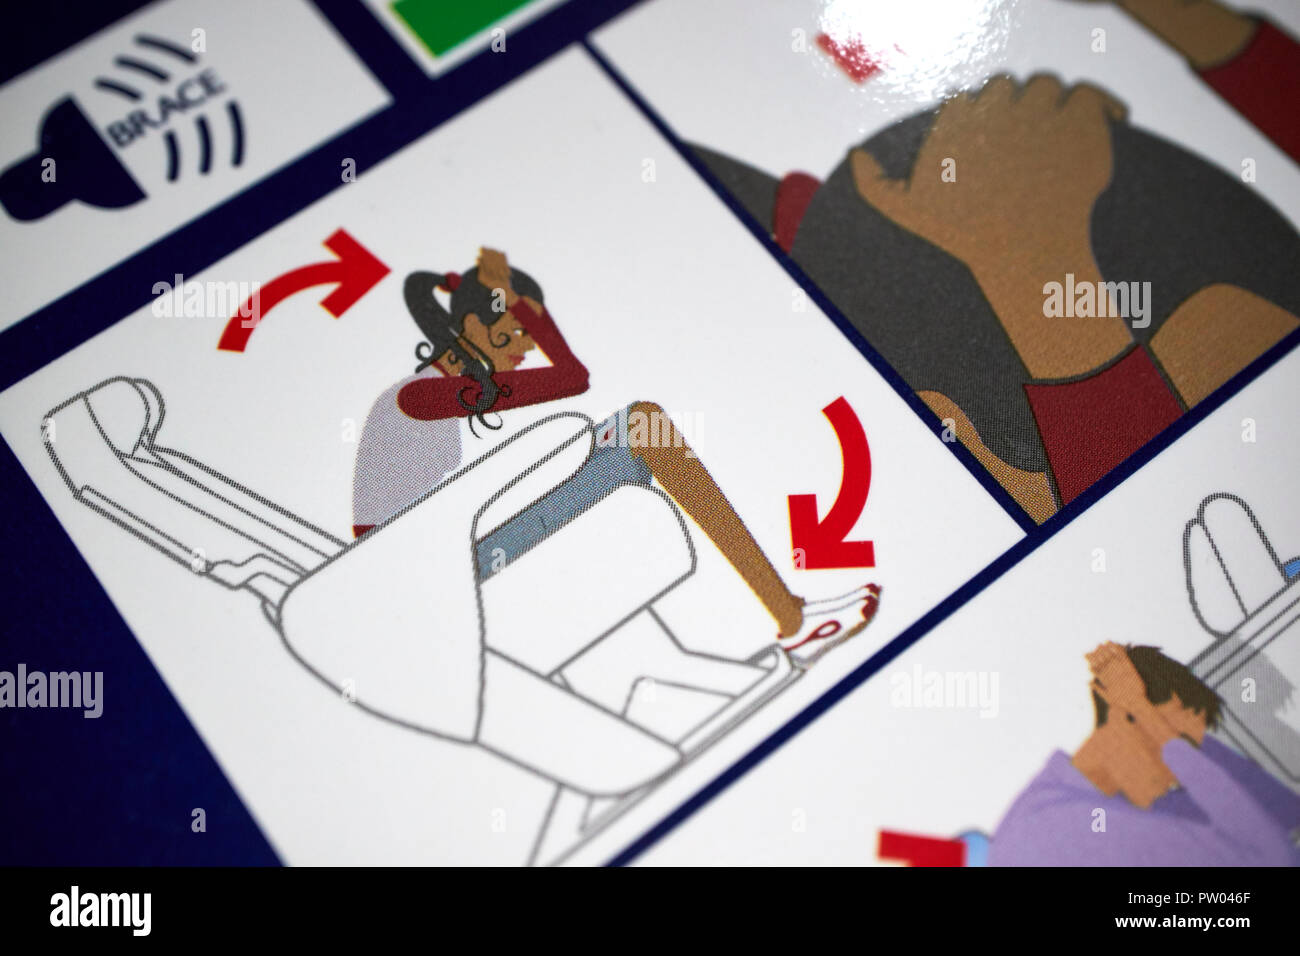 Brace Position auf die Sicherheit an Bord gezeigt British Airways Flight Safety Card Information Stockfoto